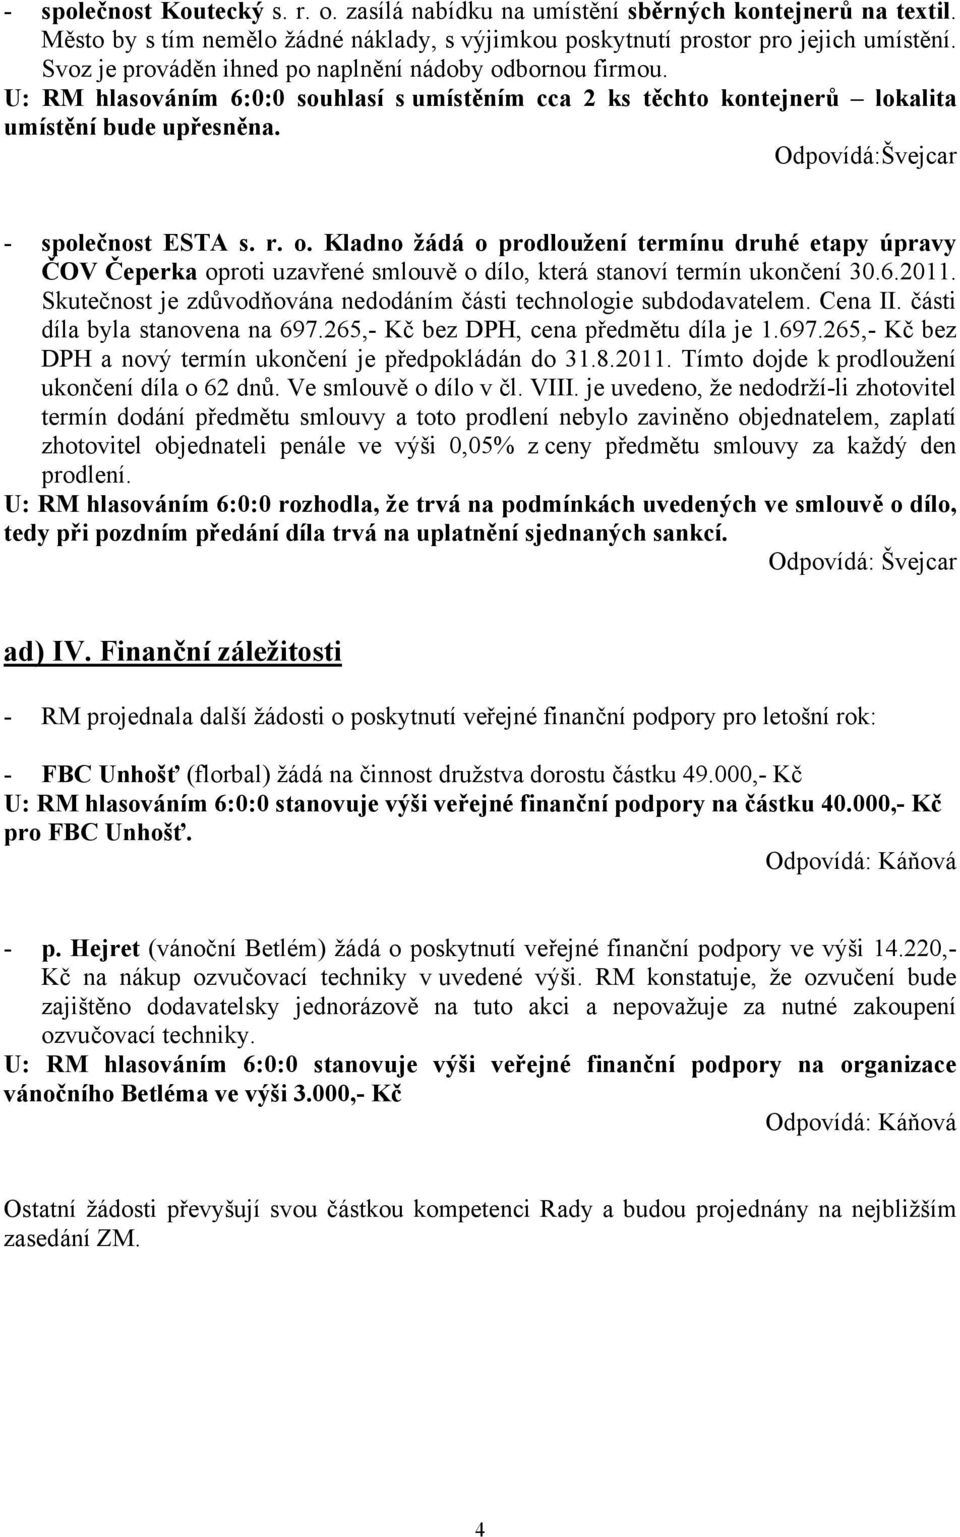 Odpovídá:Švejcar - společnost ESTA s. r. o. Kladno žádá o prodloužení termínu druhé etapy úpravy ČOV Čeperka oproti uzavřené smlouvě o dílo, která stanoví termín ukončení 30.6.2011.